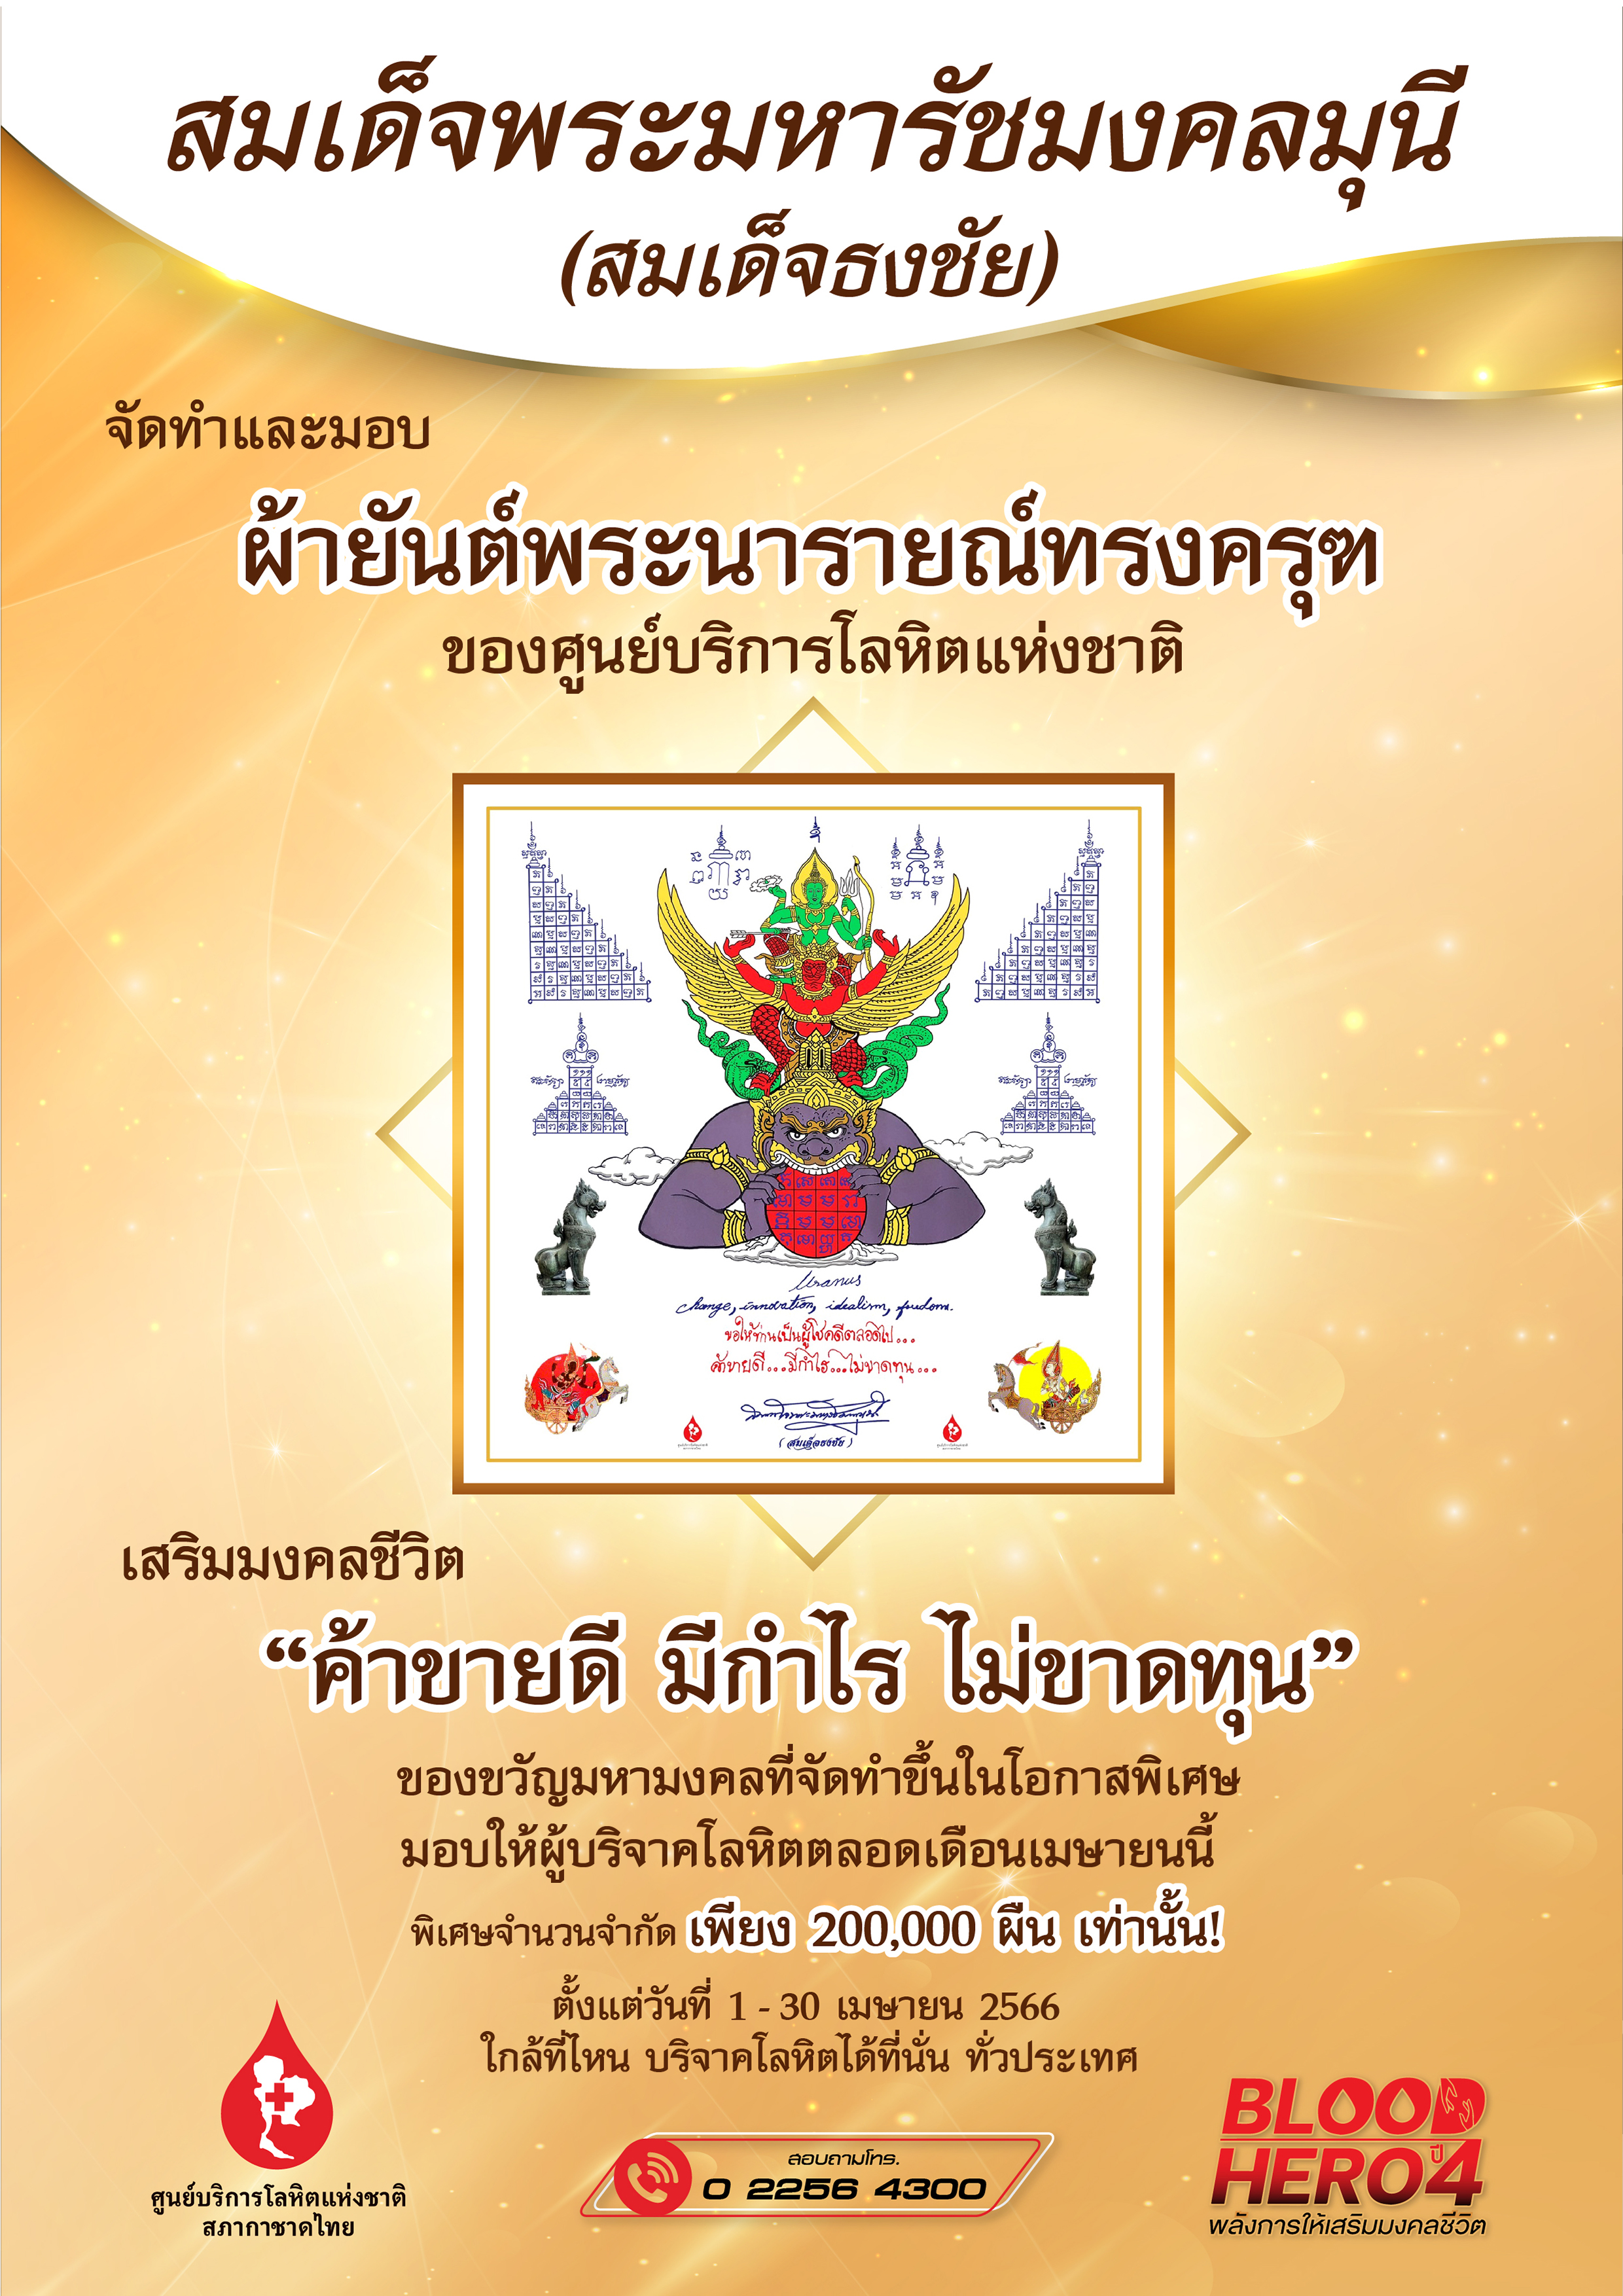 สมเด็จธงชัย วัดไตรมิตร จัดทำผ้ายันต์พระนารายณ์ทรงครุฑประทับบนพระราหู ศูนย์บริการโลหิตแห่งชาติ เพื่อมอบให้ผู้บริจาคโลหิตทั่วประเทศ เป็นของขวัญปีใหม่ไทย เสริมมงคลชีวิต